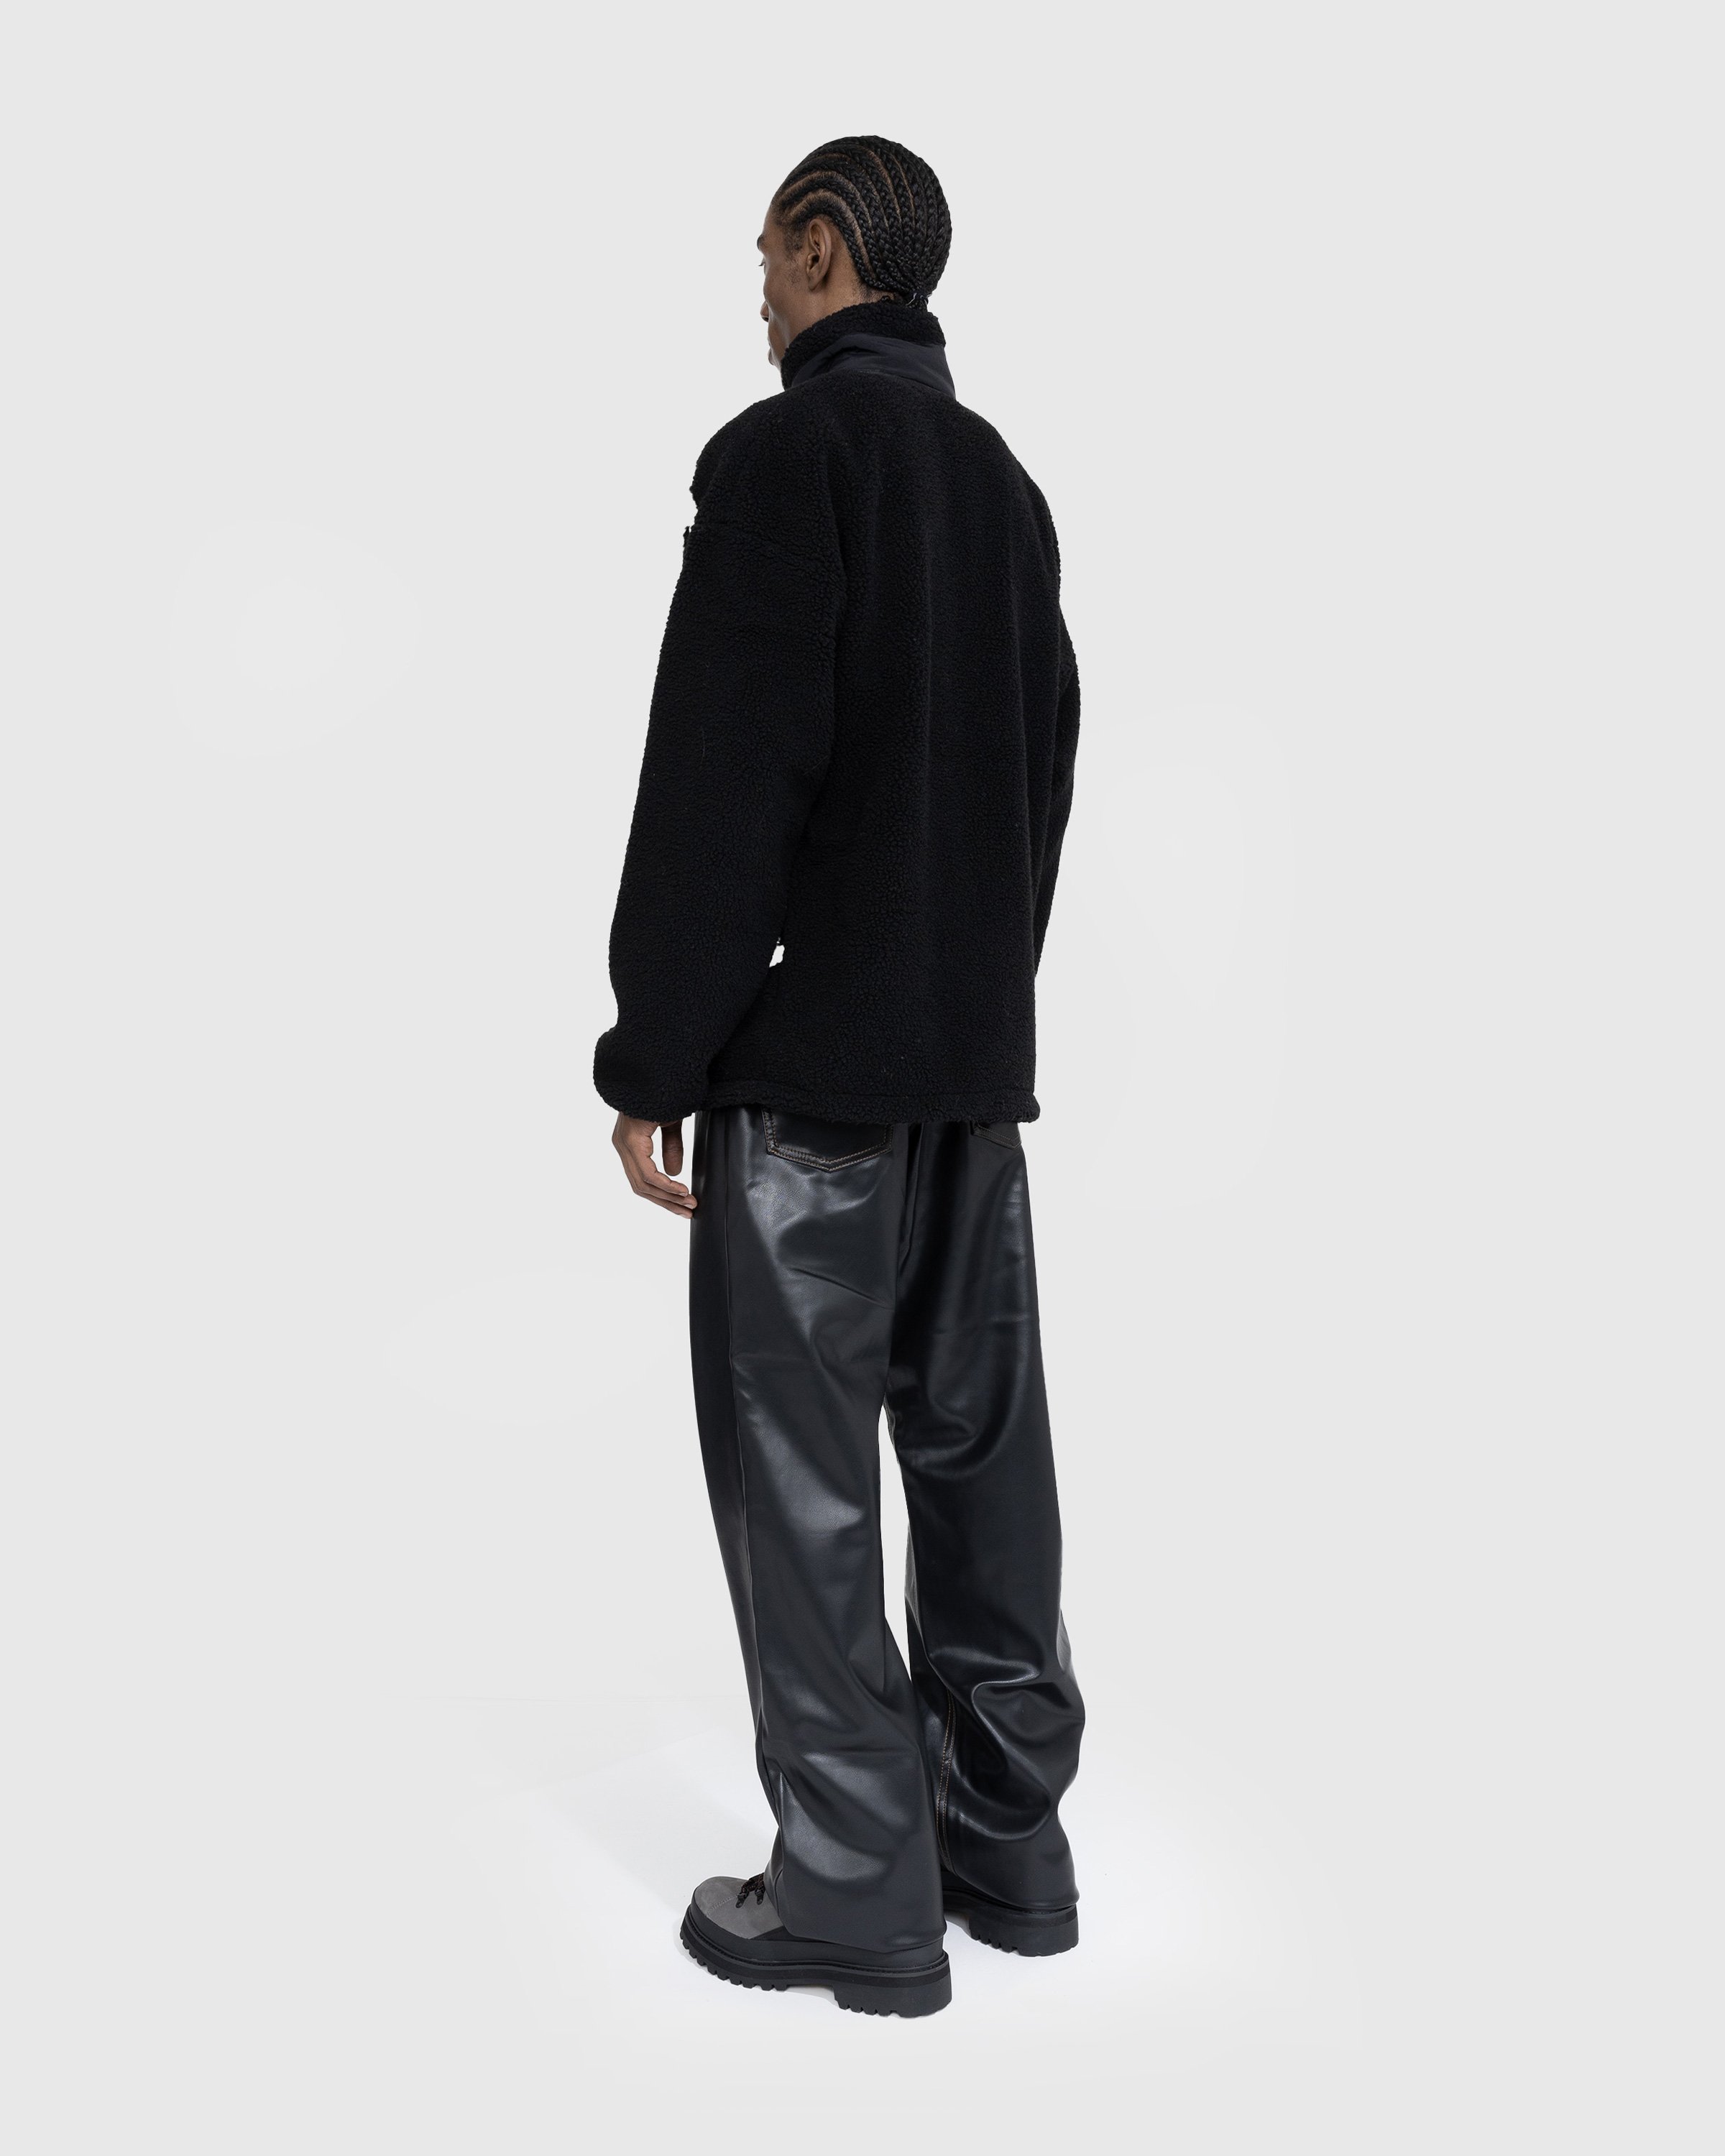 Y/Project - PARIS' BEST JACQUARD FLEECE JACKET - Clothing - Black - Image 4